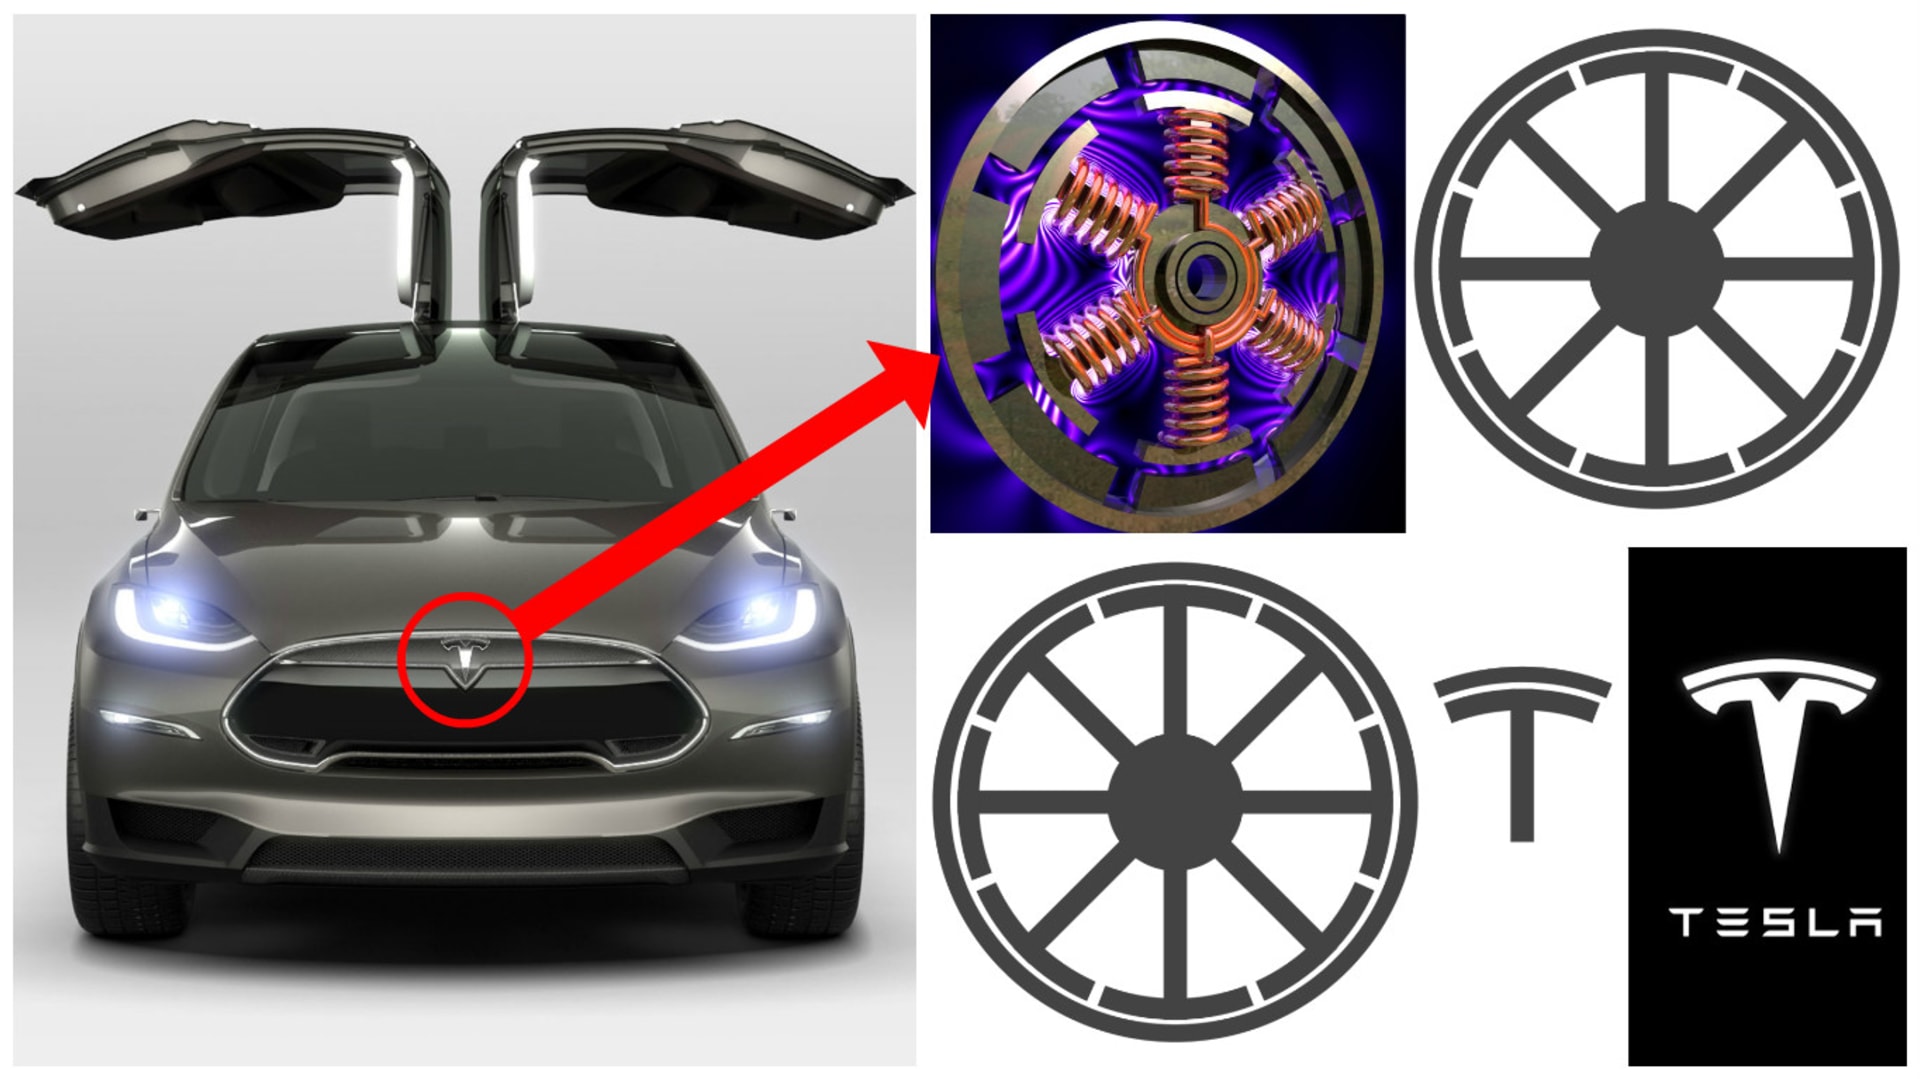 Elon Musk potvrdil interpretaci, že logo Tesla Motors je inspirováno výřezem z elektromotoru